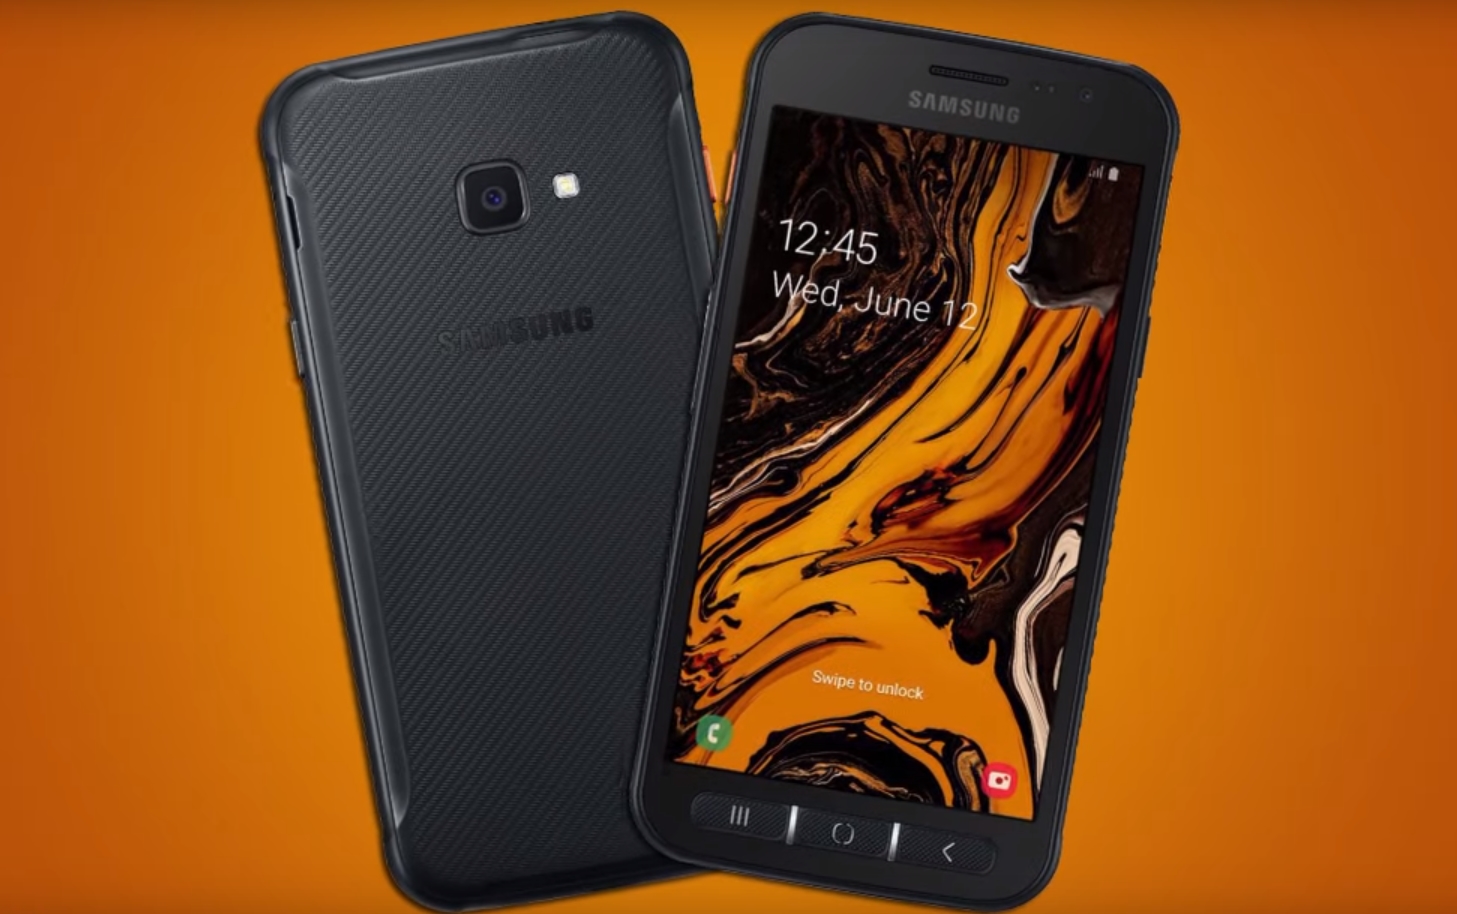 スマートフォン Samsung Galaxy Xcover 4s: 強度とパフォーマンス